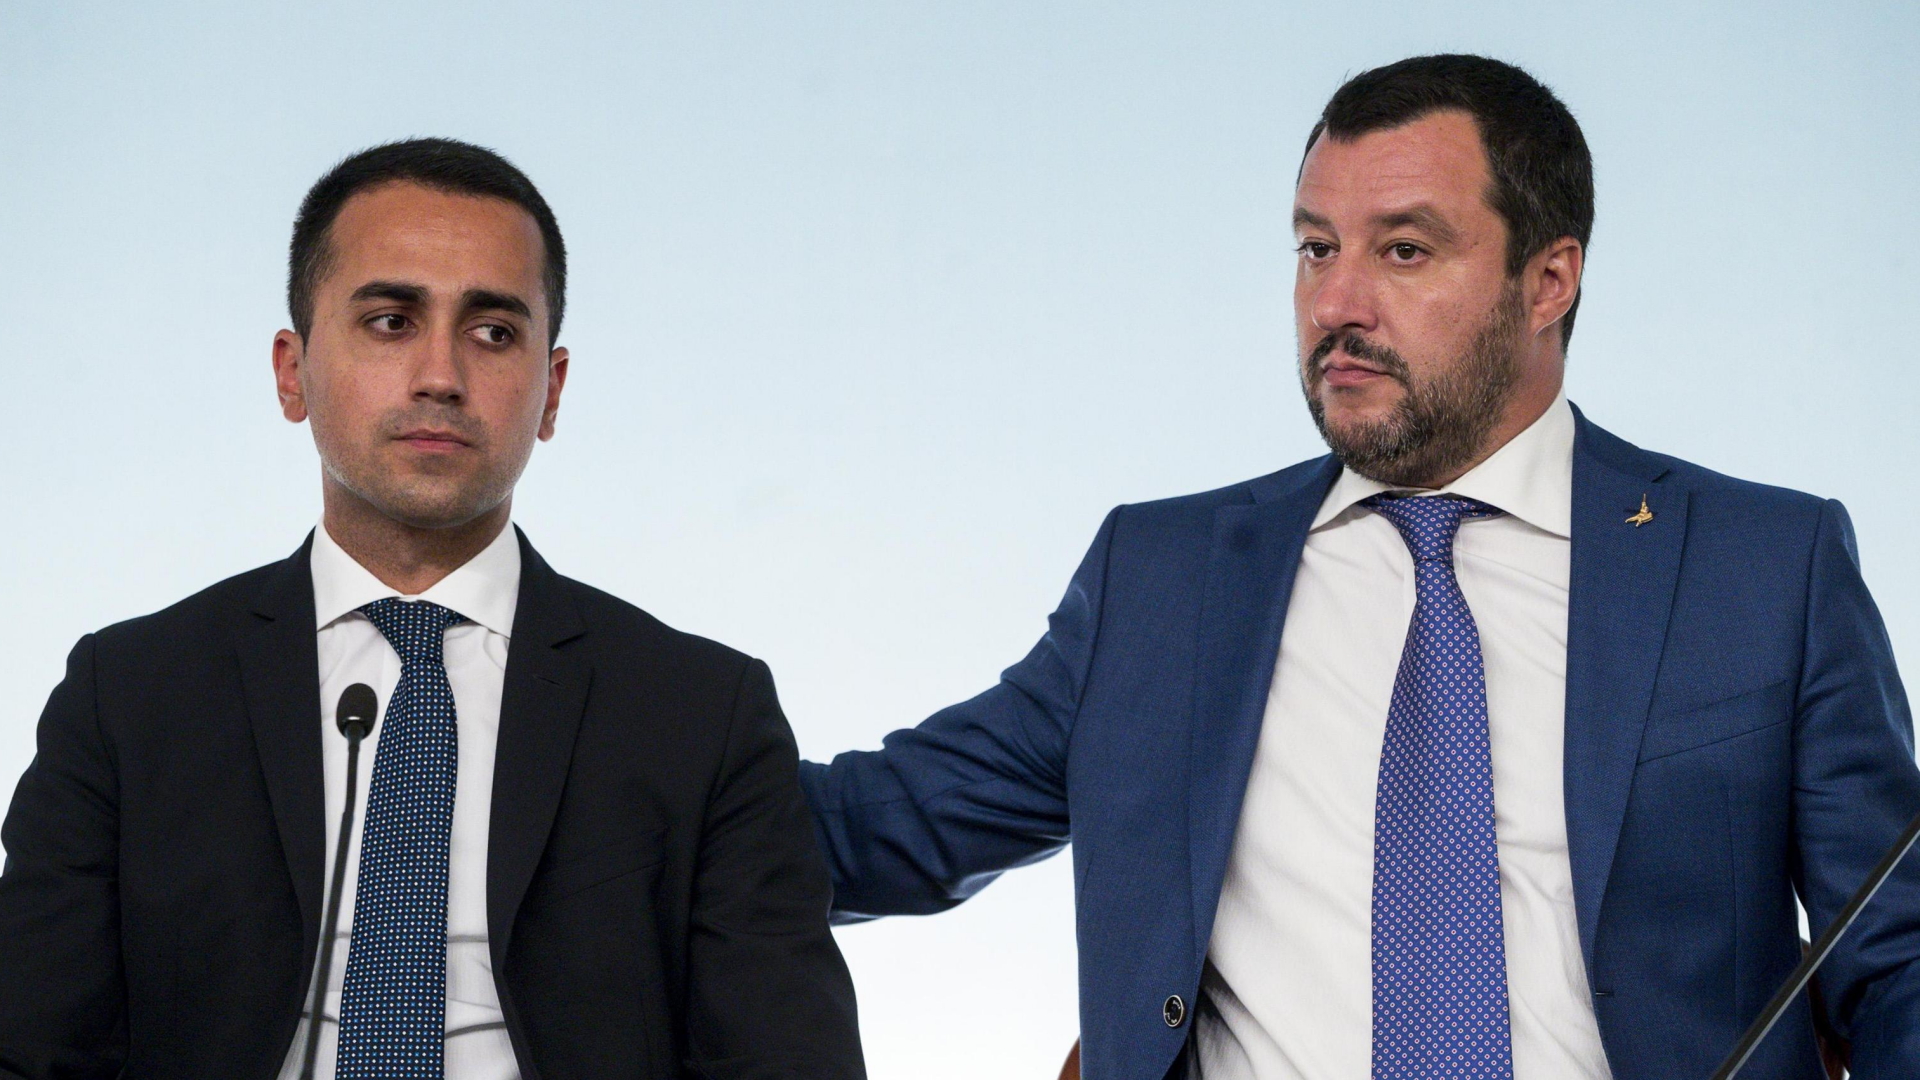 Die italienischen Minister di Maio und Salvini während einer Pressekonferenz.